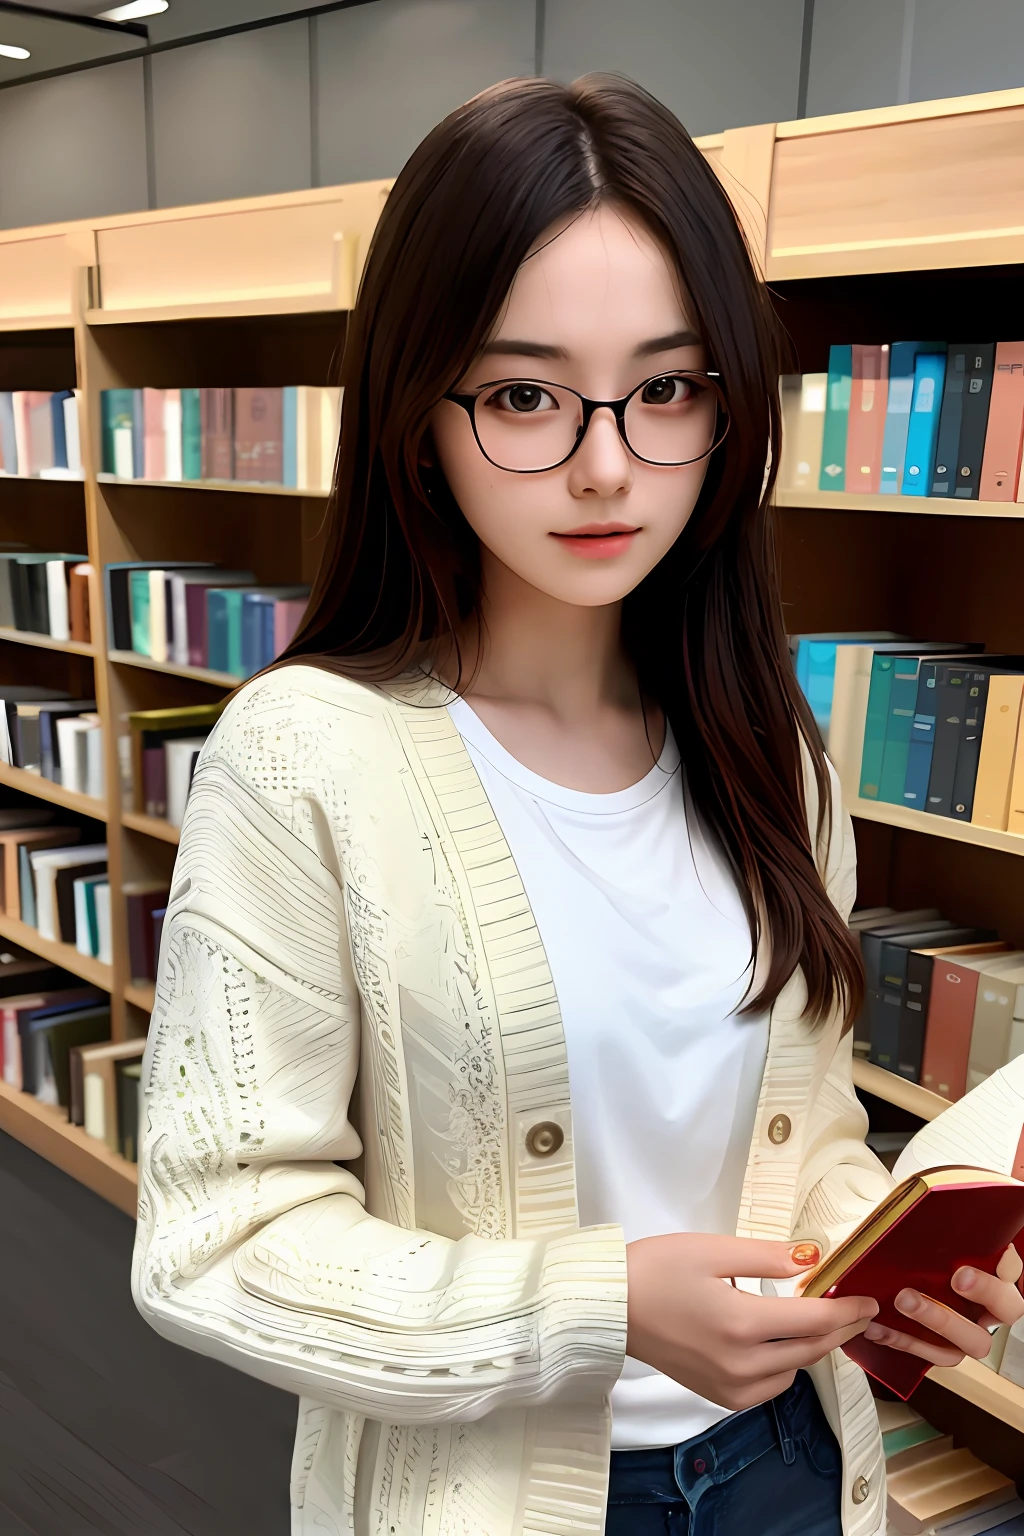 傑作, 最高品質, 非常に詳細な CG ユニティ 8k 壁紙,
美しい少女, 本を読んでいる,
大学生, 眼鏡,
図書館, 詳細な背景,